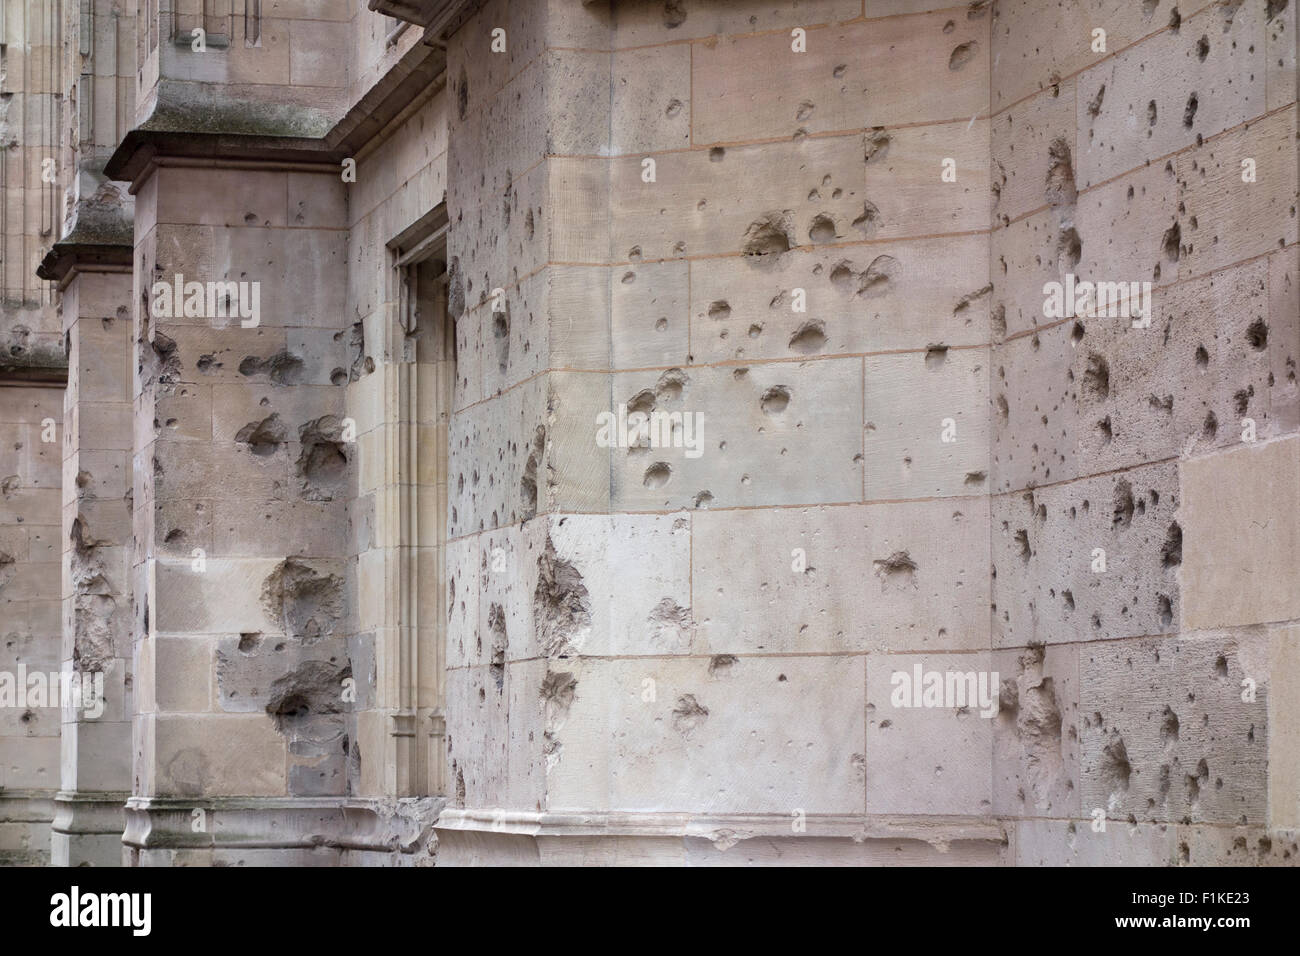 WW2 bullet holes at the Palais de Justice, Rouen, France Stock Photo